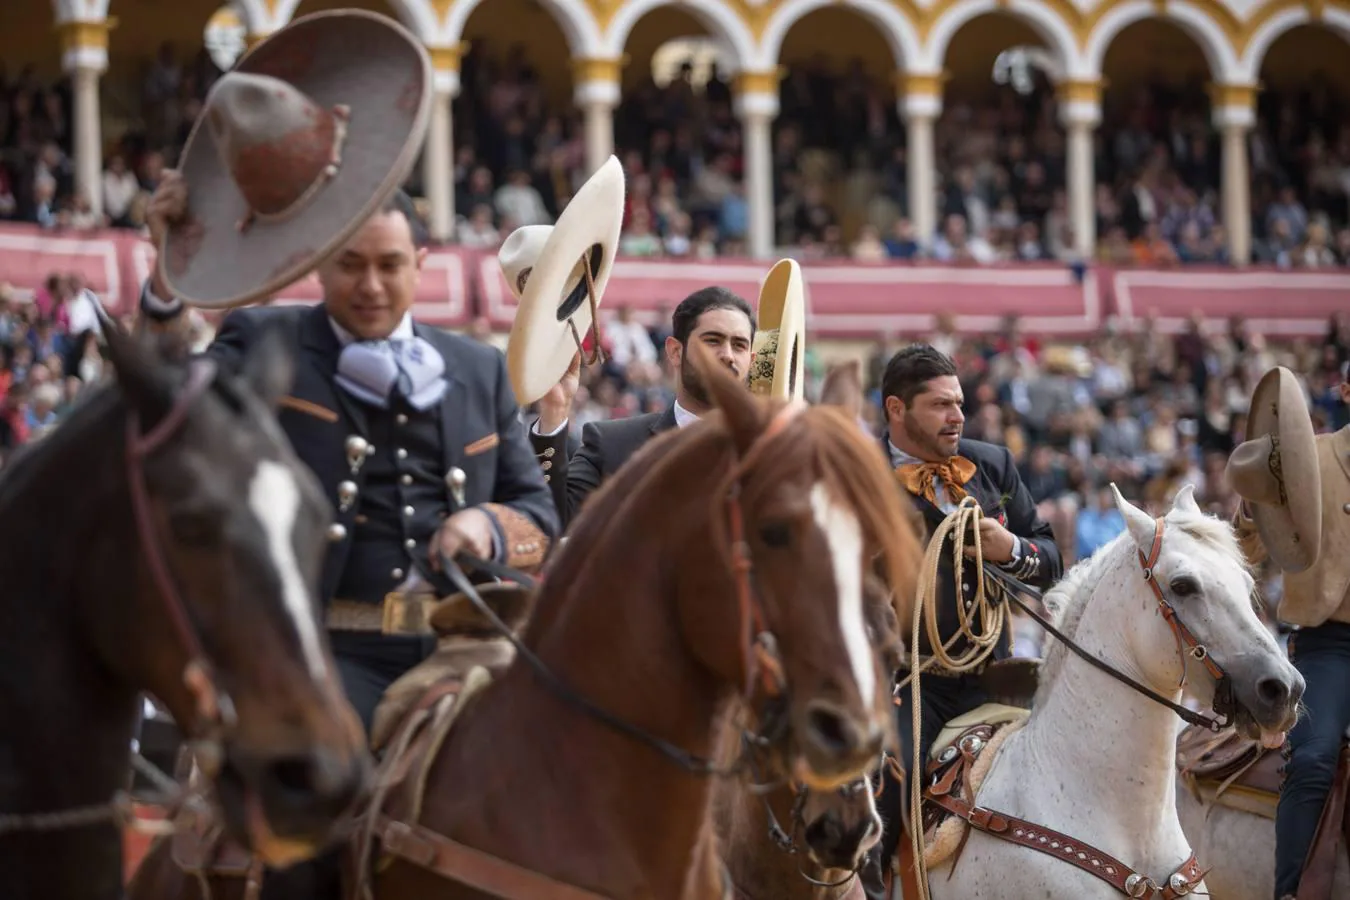 Tradicional Exhibición de Enganches en la Real Maestranza de Sevilla